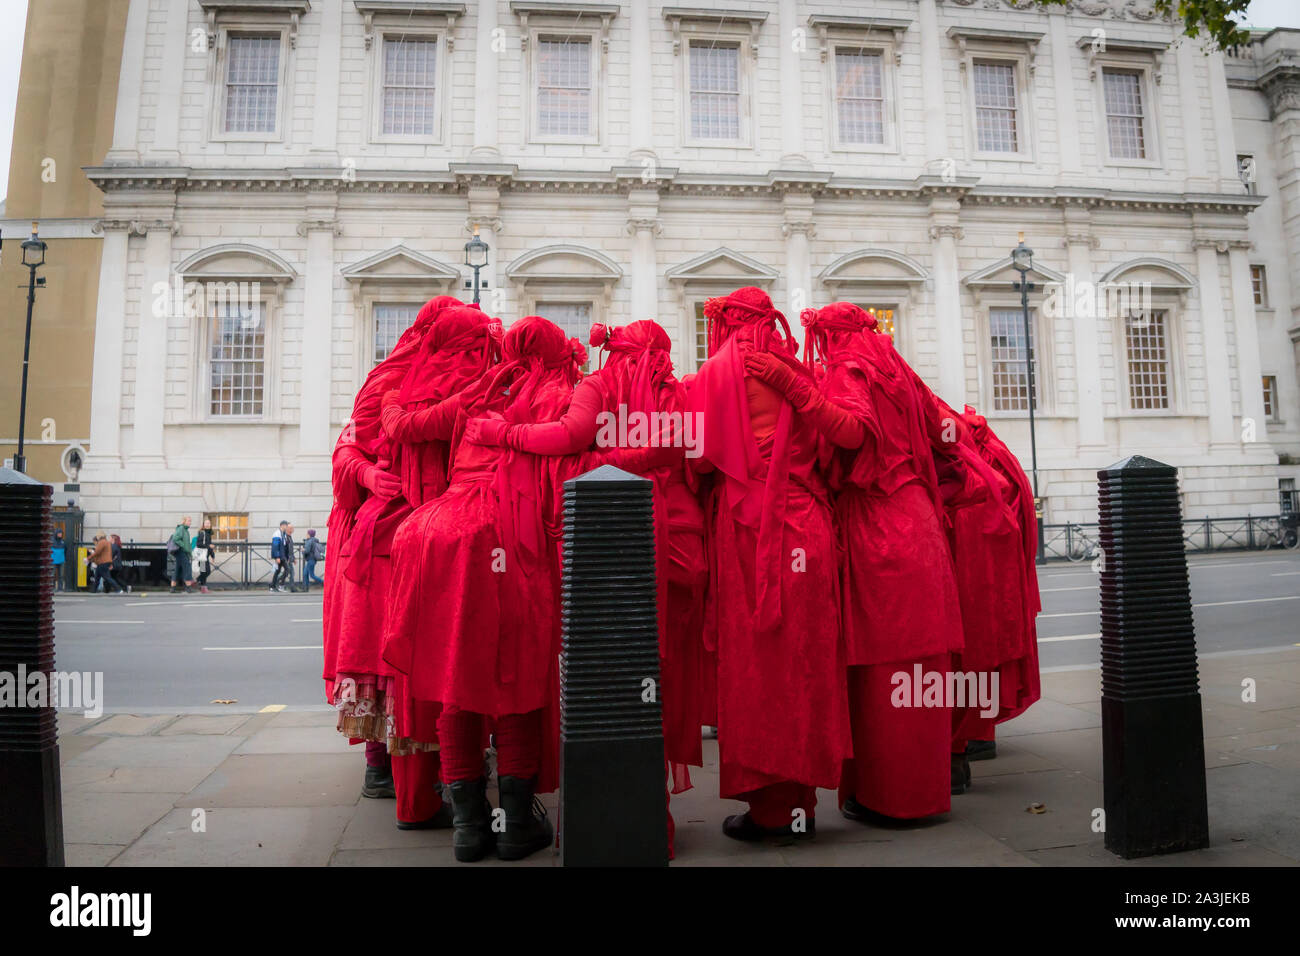 Whitehall, Londres, Royaume-Uni. - 7 octobre 2019 - XR ptotests - rouge 'Brigade' art group lors d'une performance de rue en face de Banqueting House Banque D'Images